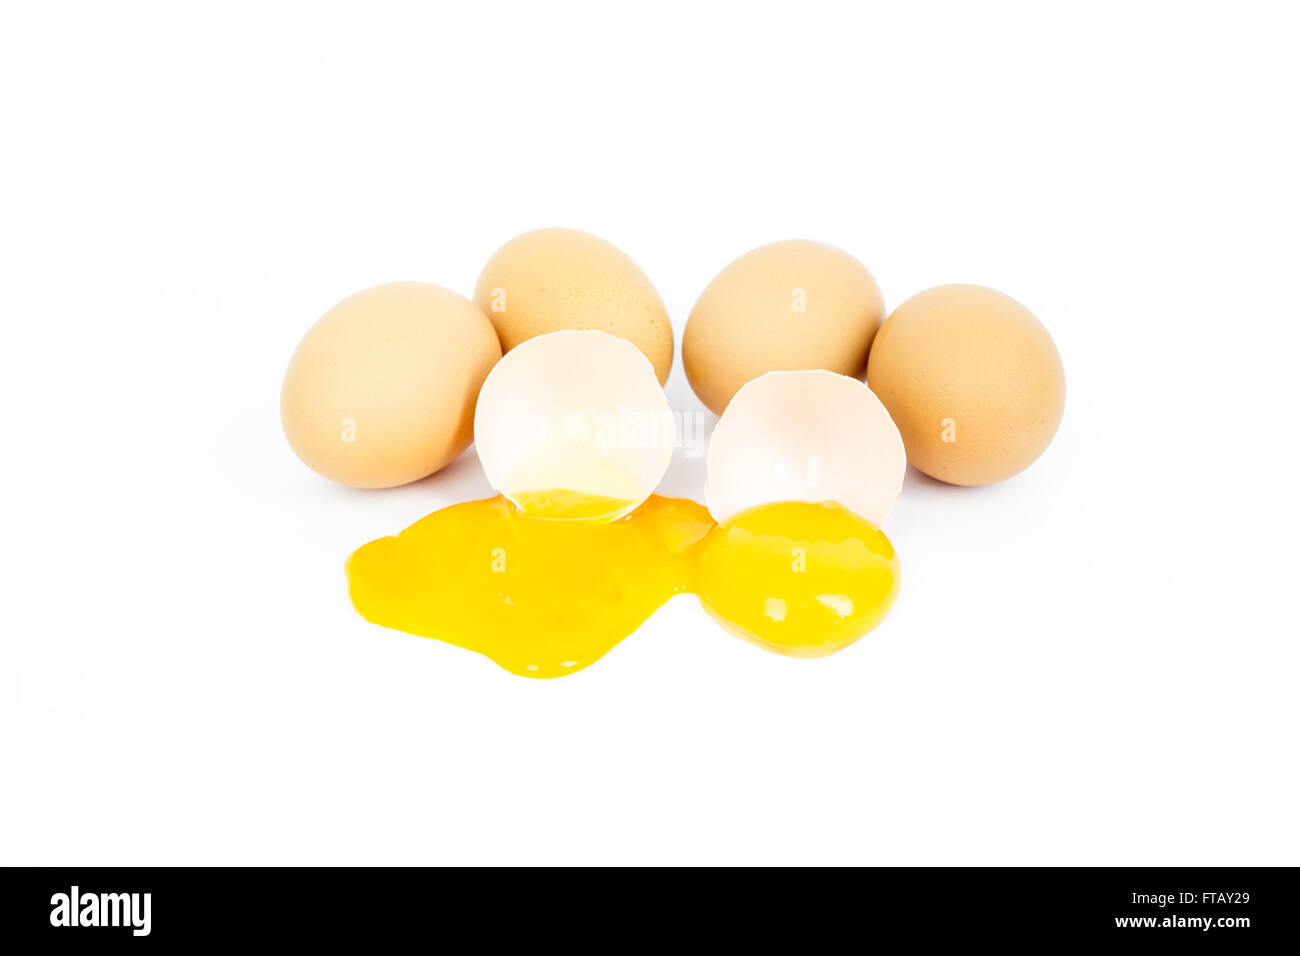 Huevo en grupo sobre fondo blanco roto. Esta imagen acerca de la comida, el desayuno o almuerzo y granjas de contenido. El enfoque selectivo en la yema de huevo. Foto de stock